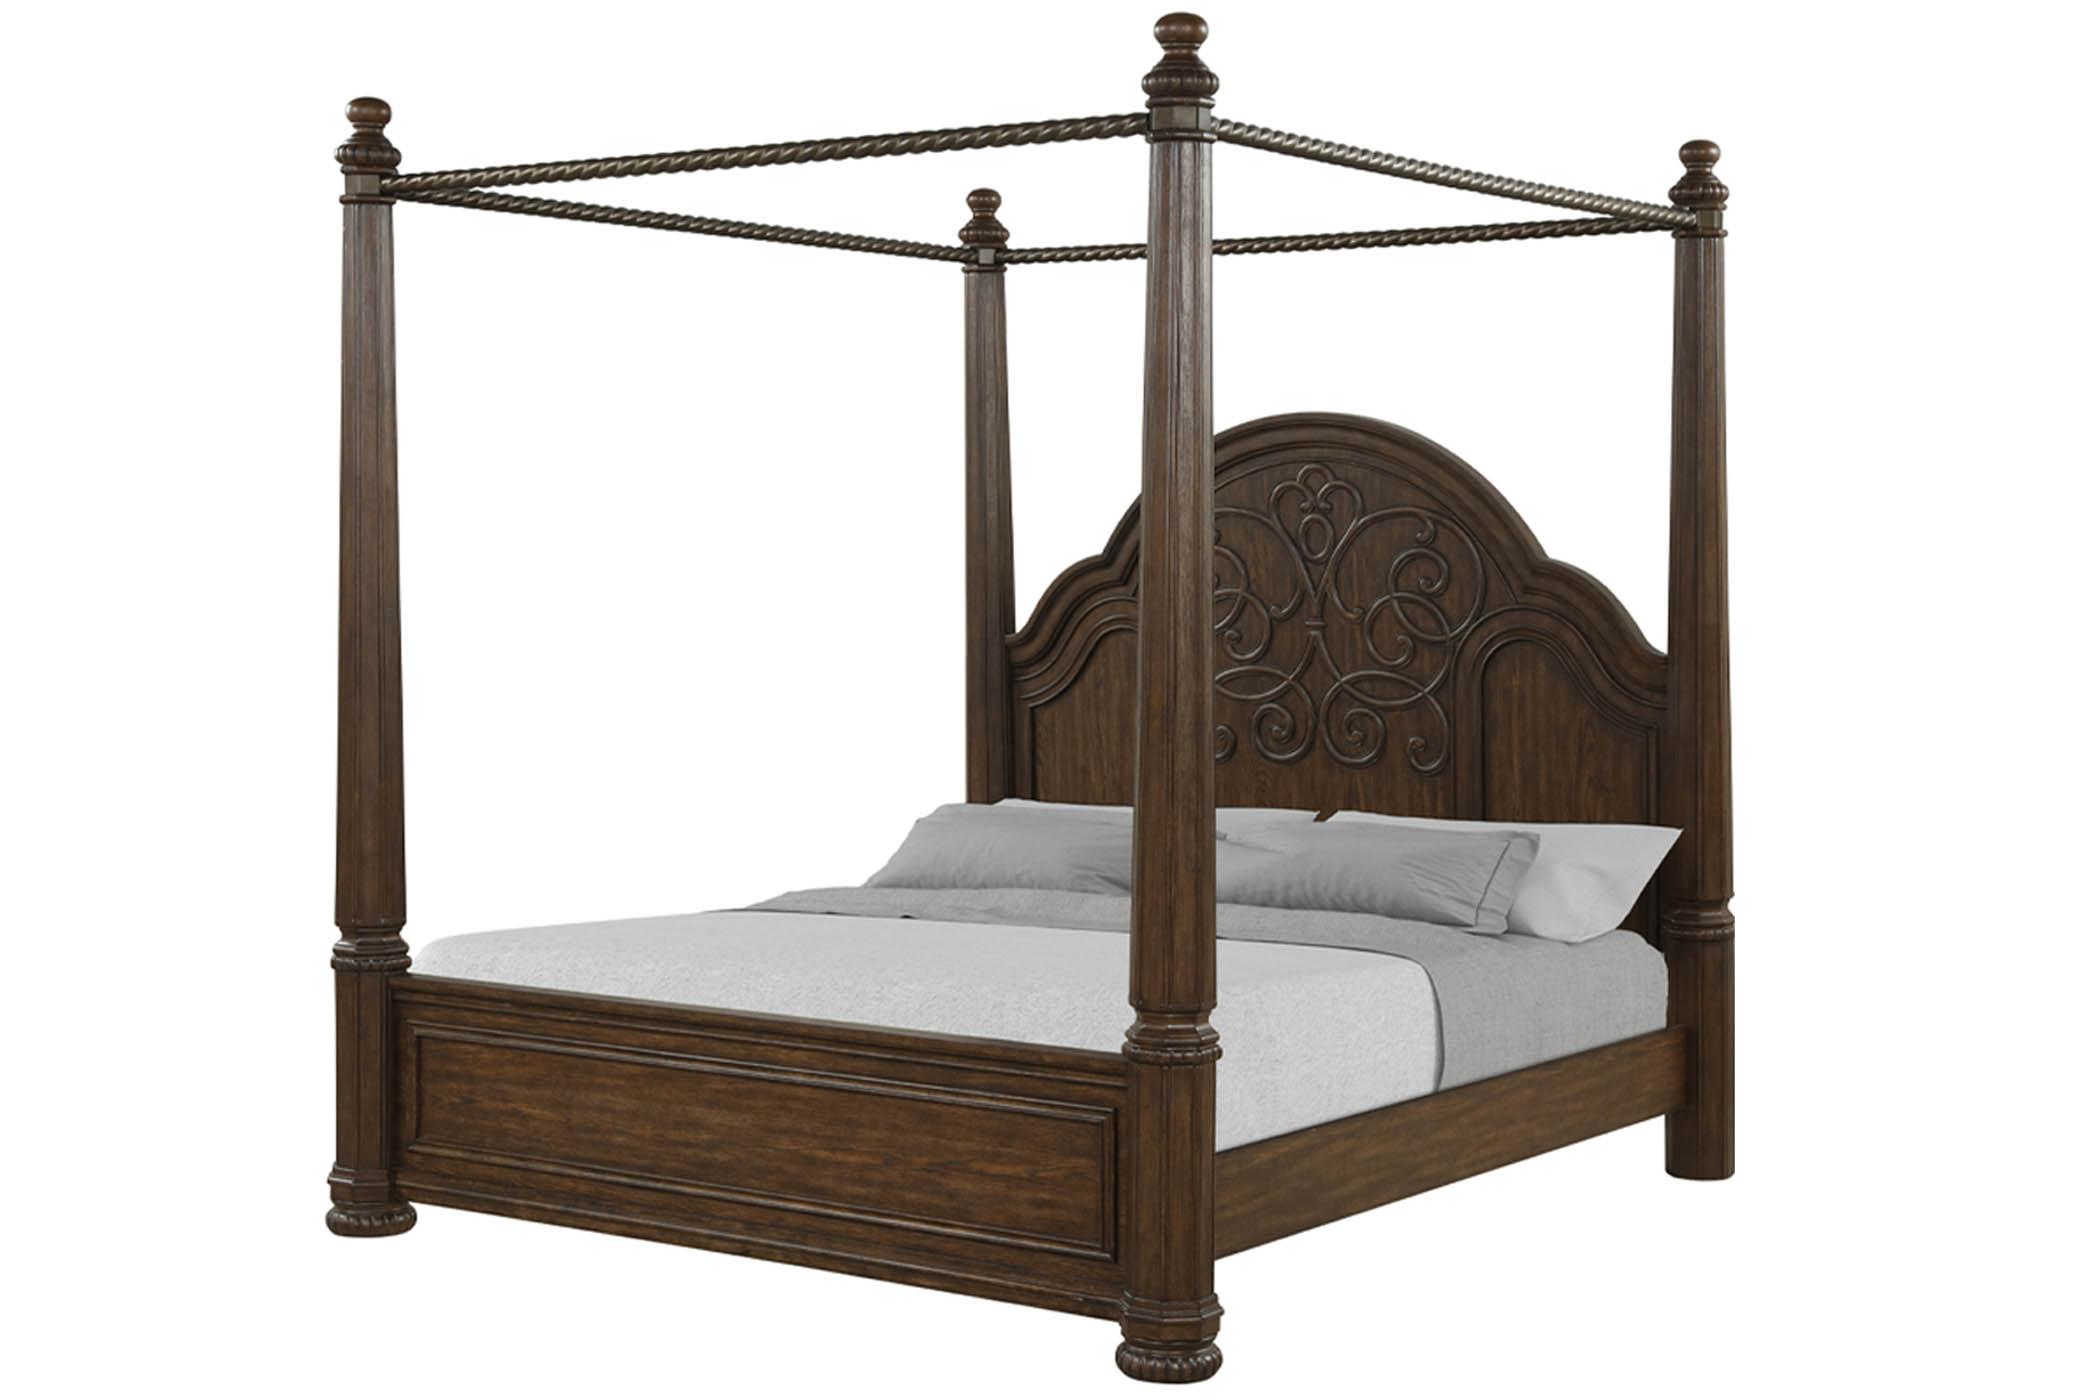 

    
Royal Mahogany Canopy King Bed TUSCANY 321-113 Bernards Traditional
